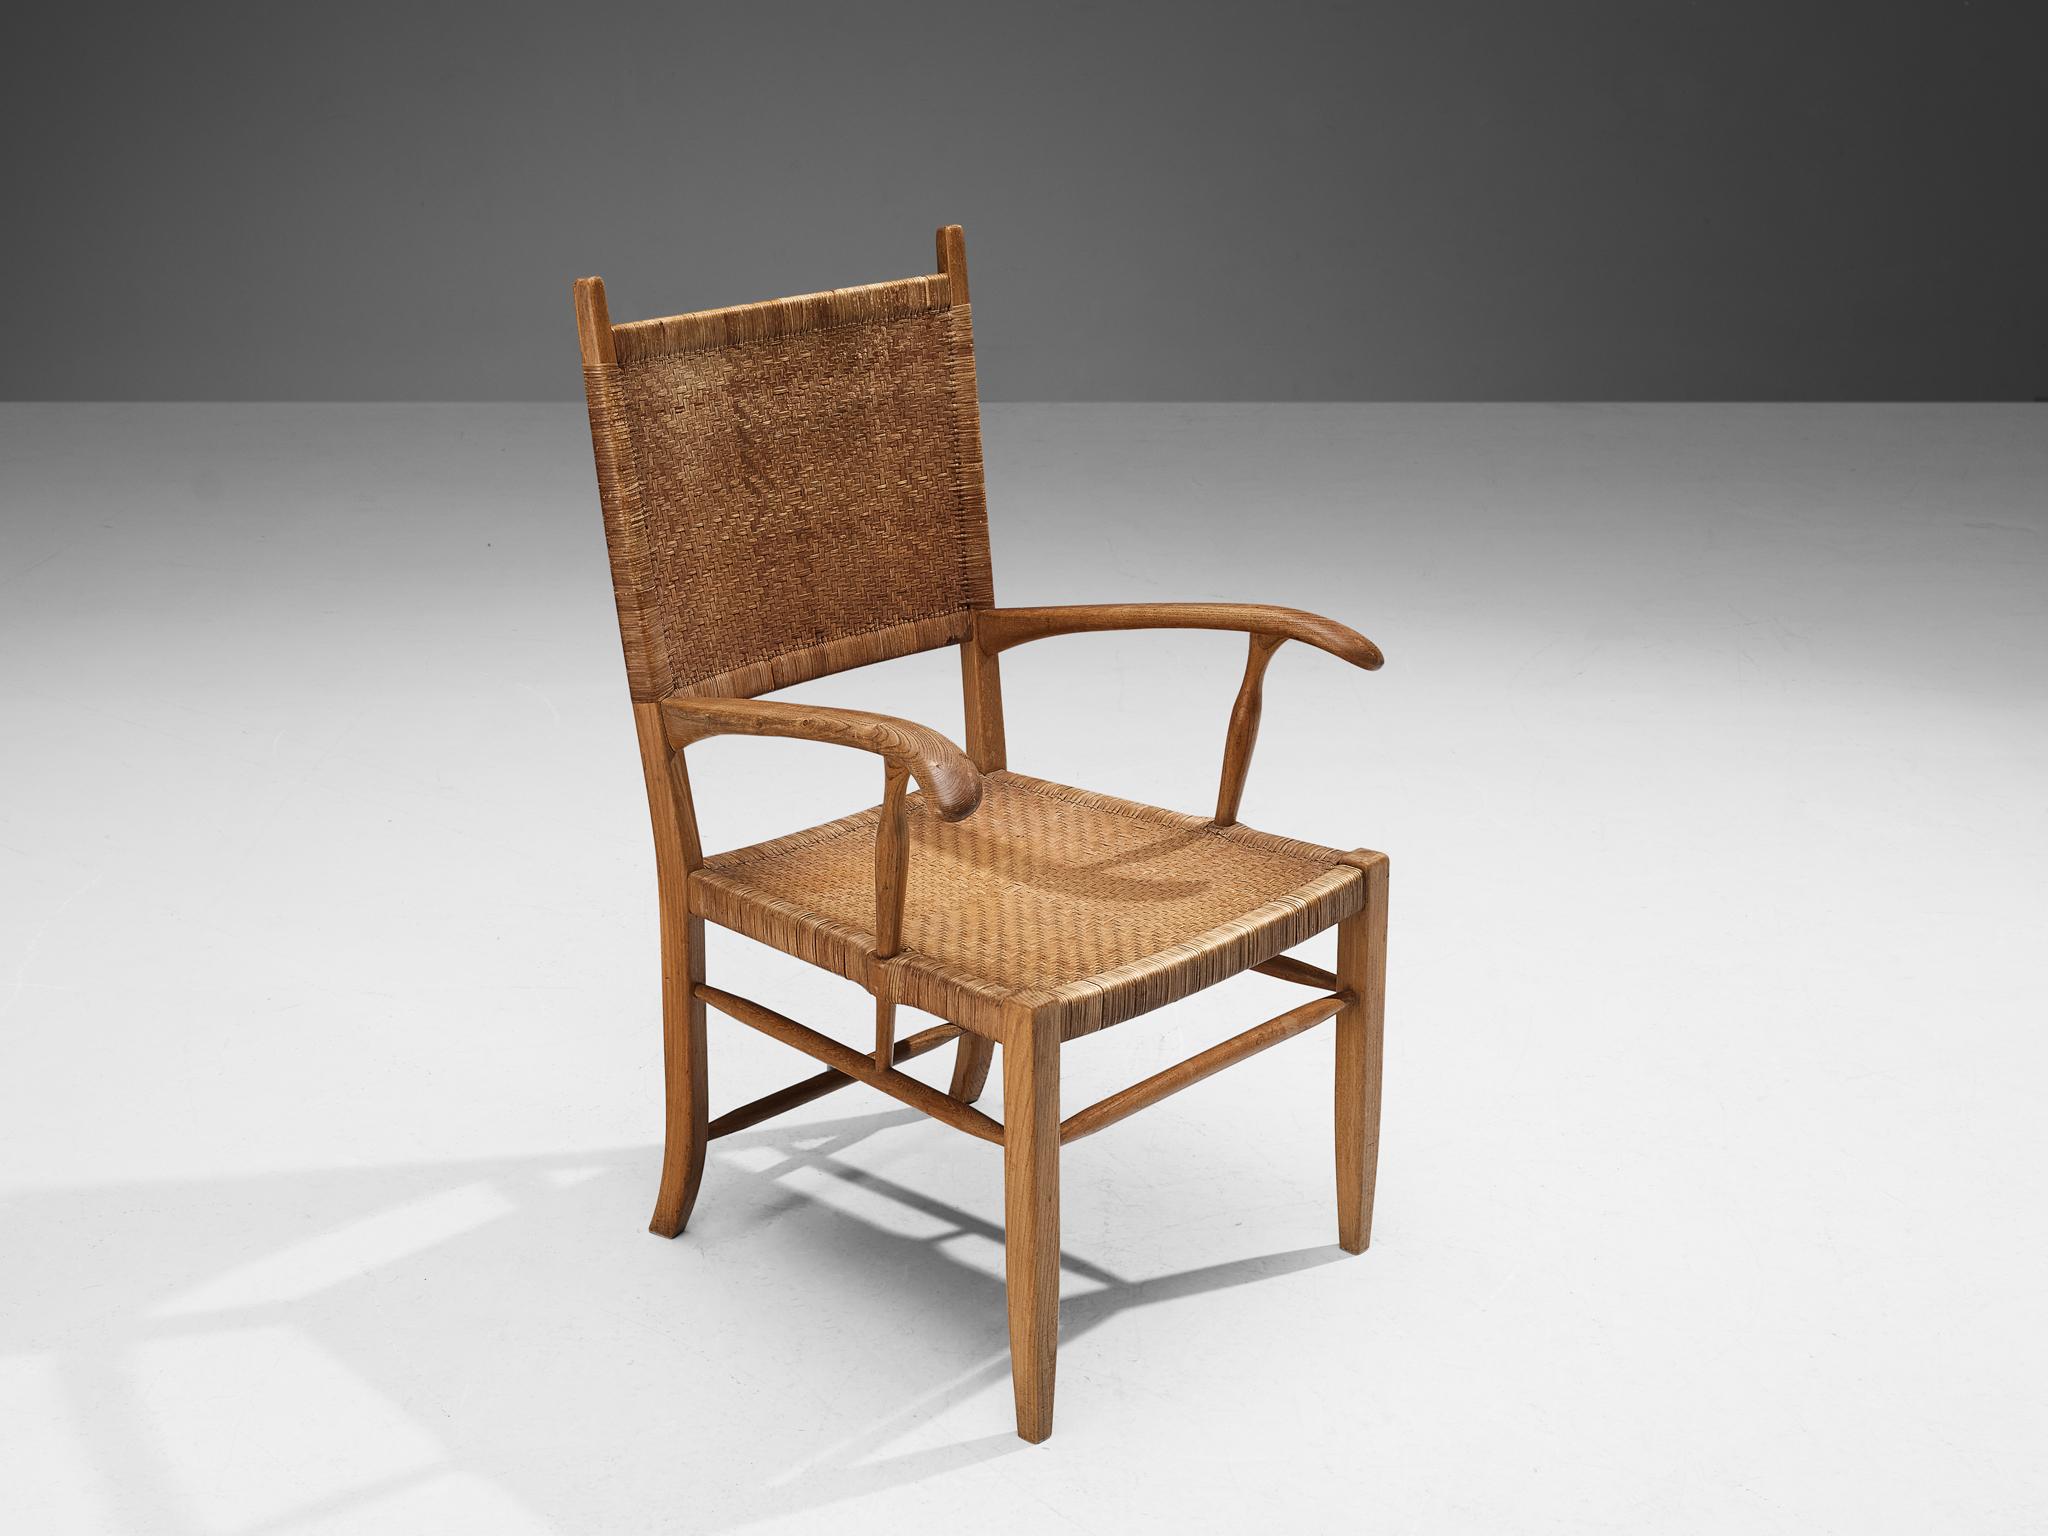 Fauteuil, frêne, rotin, Pays-Bas, années 1950.

Cet élégant fauteuil est doté d'une structure en bois de frêne chaleureux. Le dossier haut et majestueux rend ce meuble très remarquable. Le dossier est garni de canne tressée et se marie bien avec la